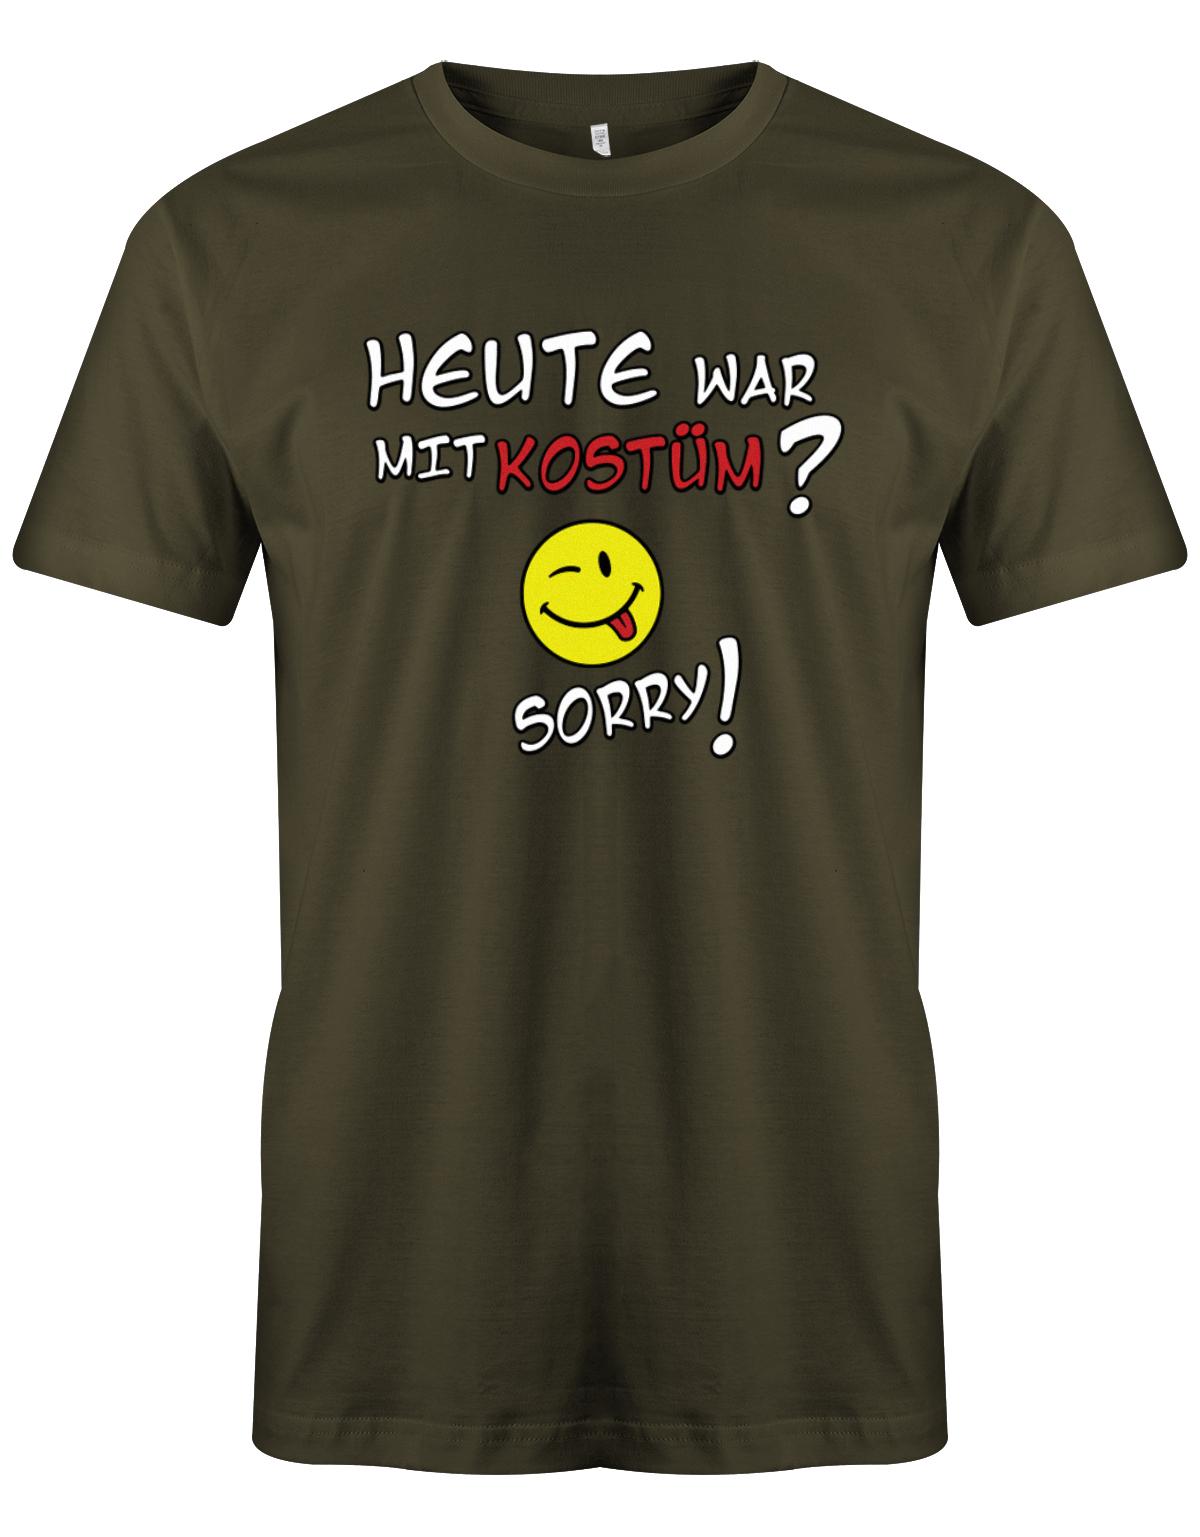 Heute-war-mit-kost-m-Sorry-Herren-Shirt-Army